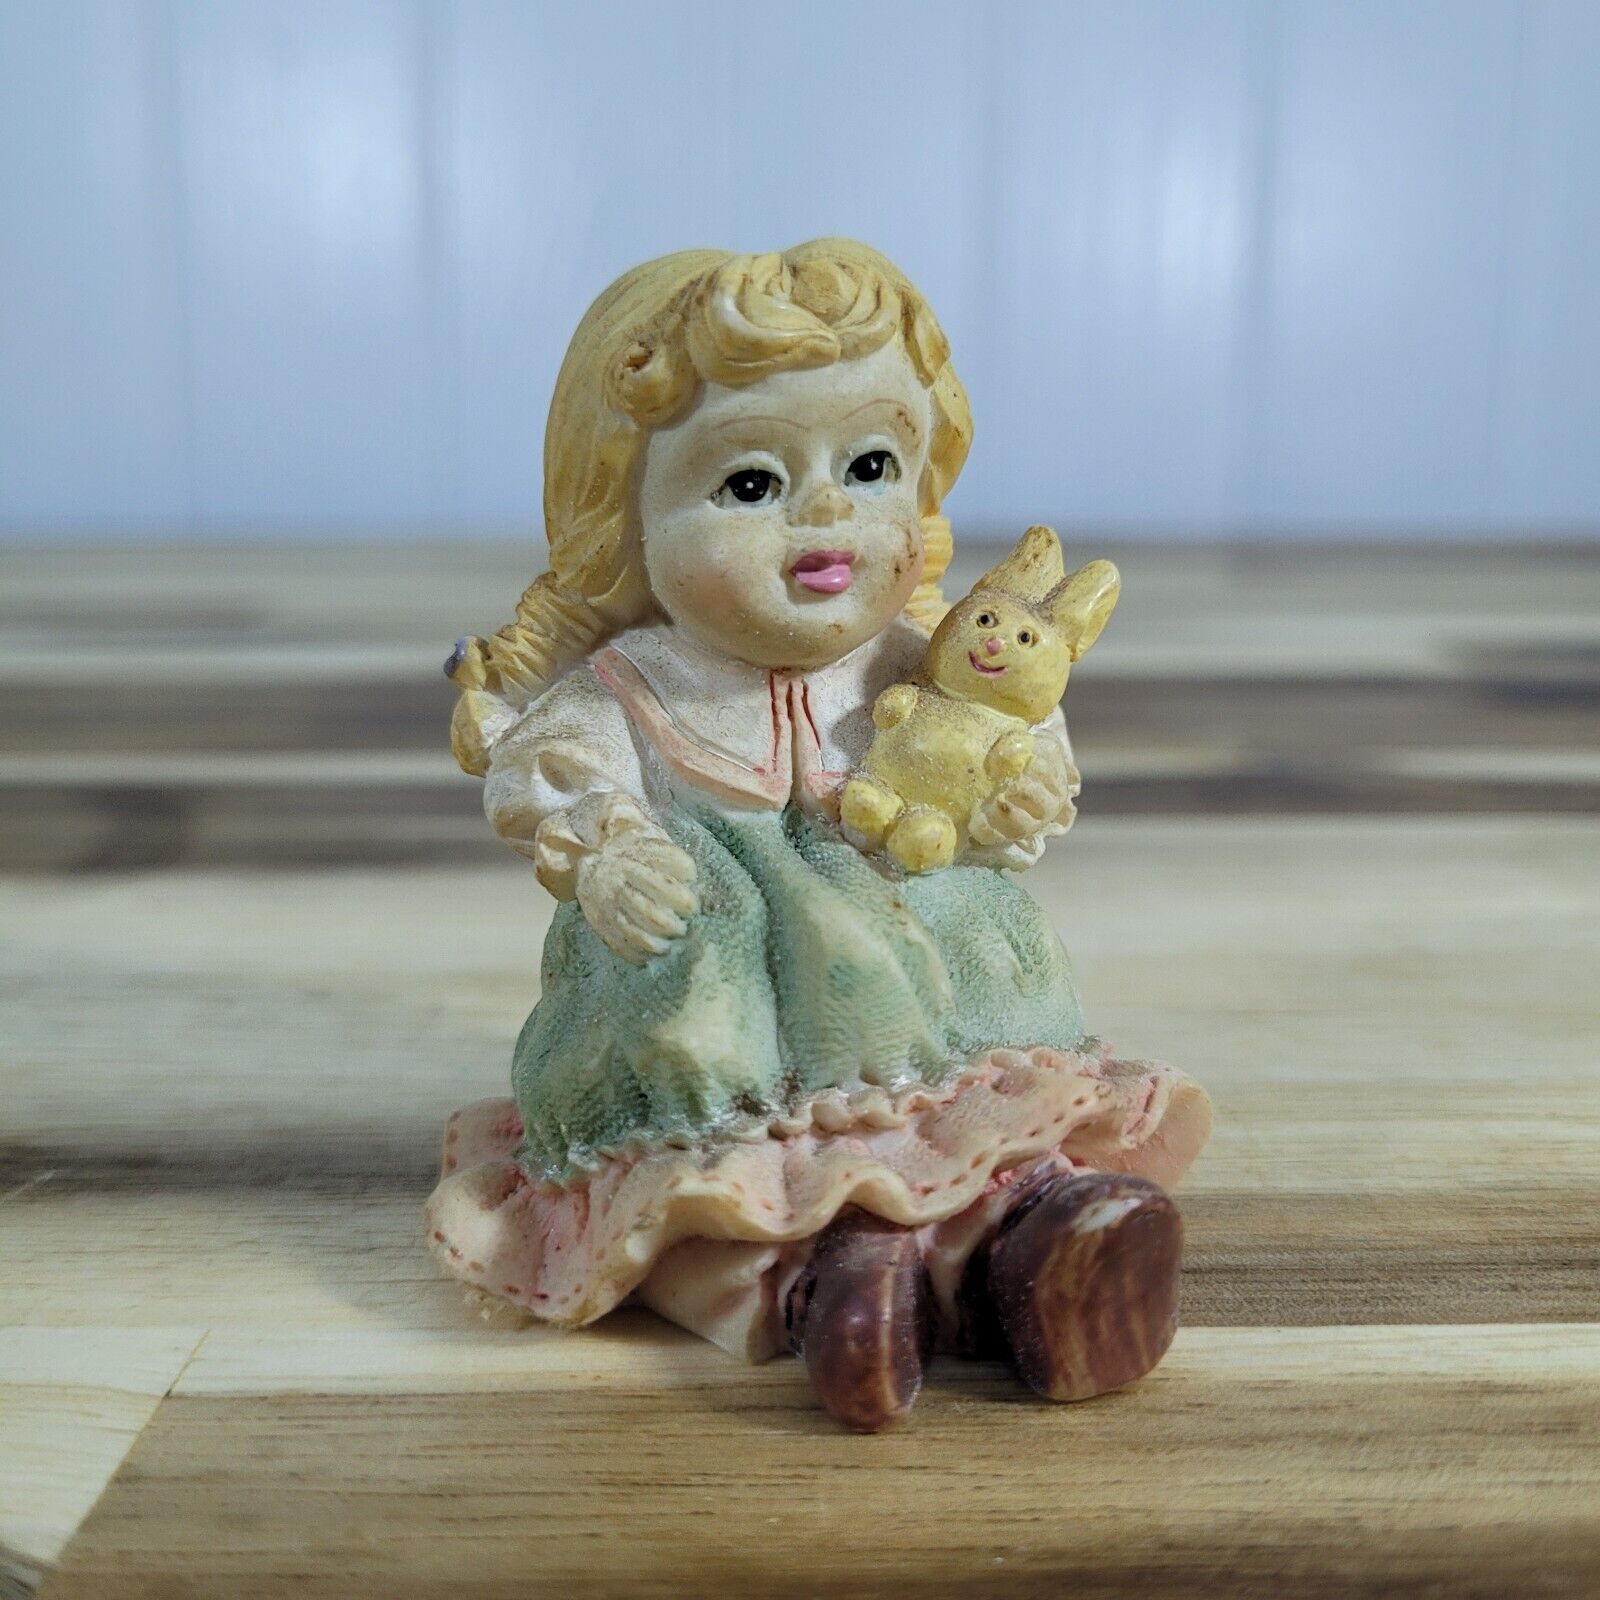 VTG Polystone Resin Life-like Figurine of Little Girl Holding Rabbit Knick Knack